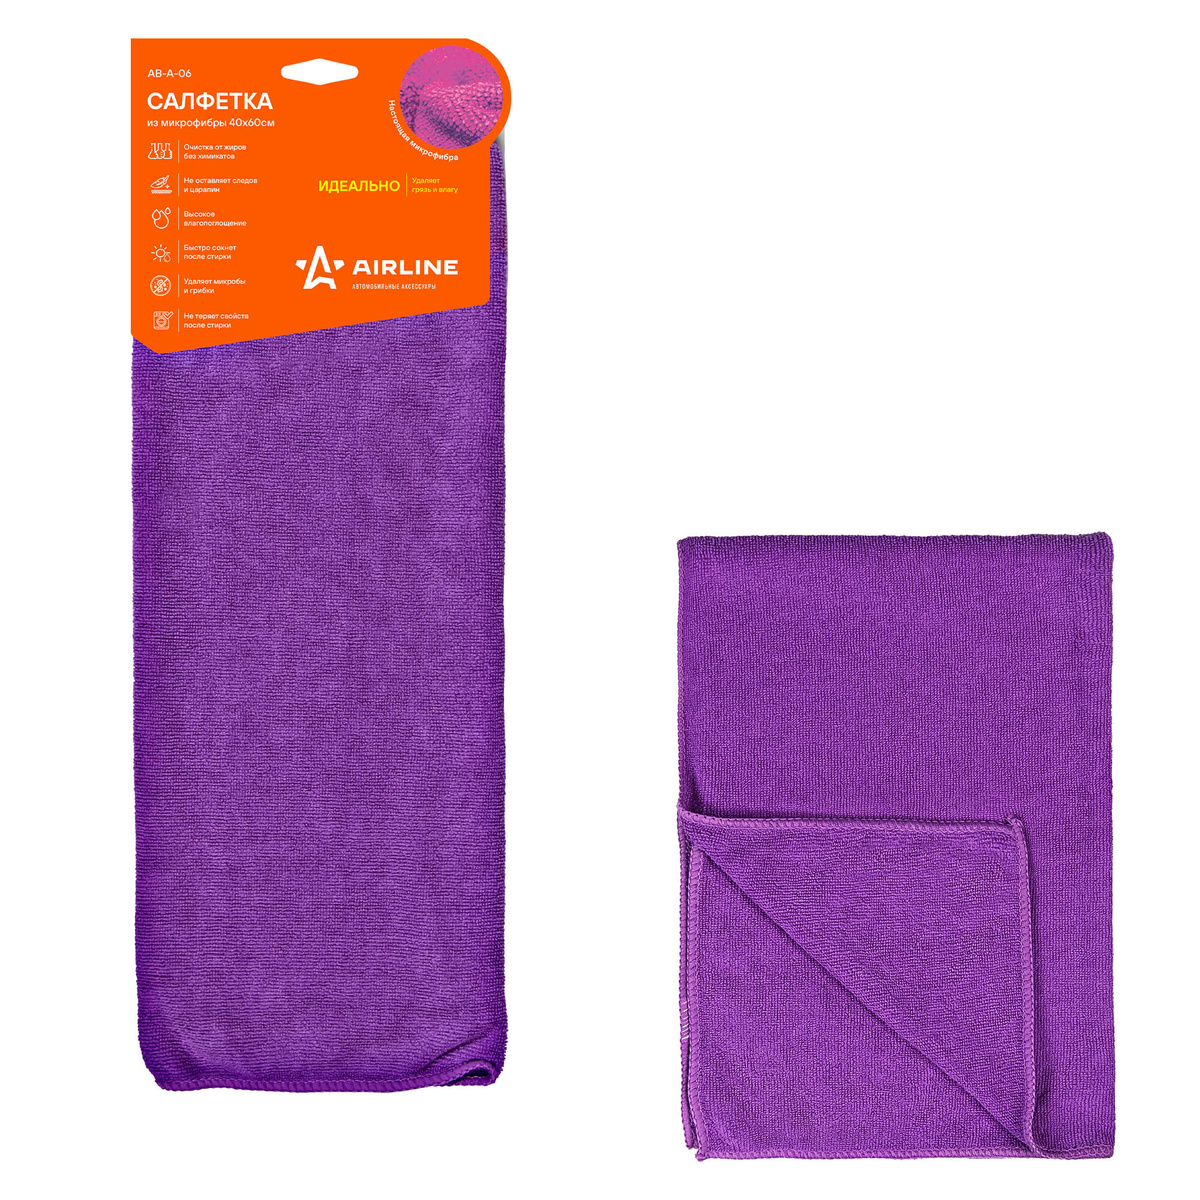 Салфетка из микрофибры фиолетовая (40*60 см) AB-A-06